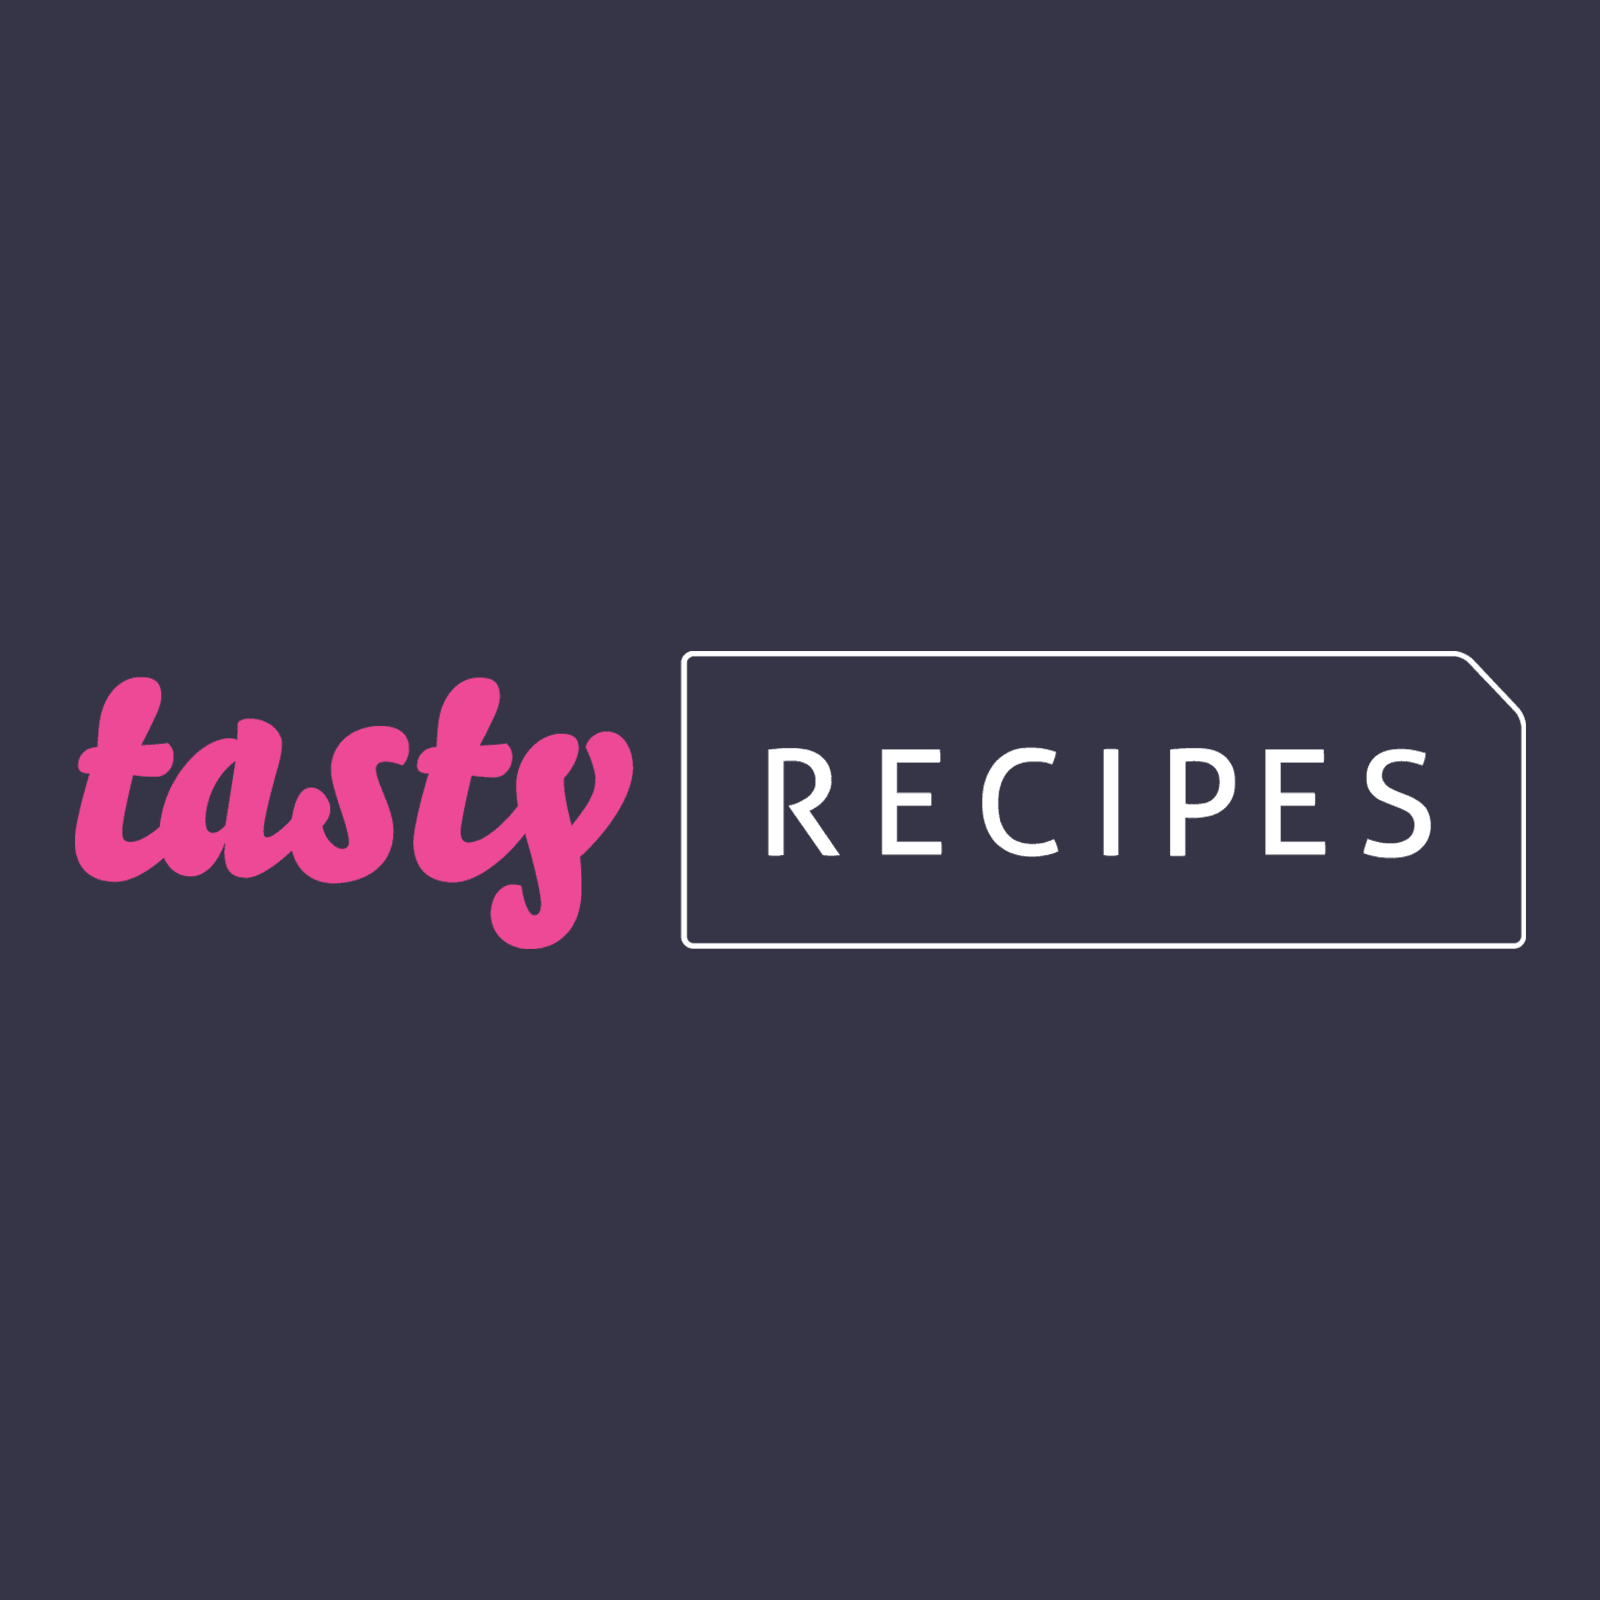 دانلود افزونه وردپرس Tasty Recipes